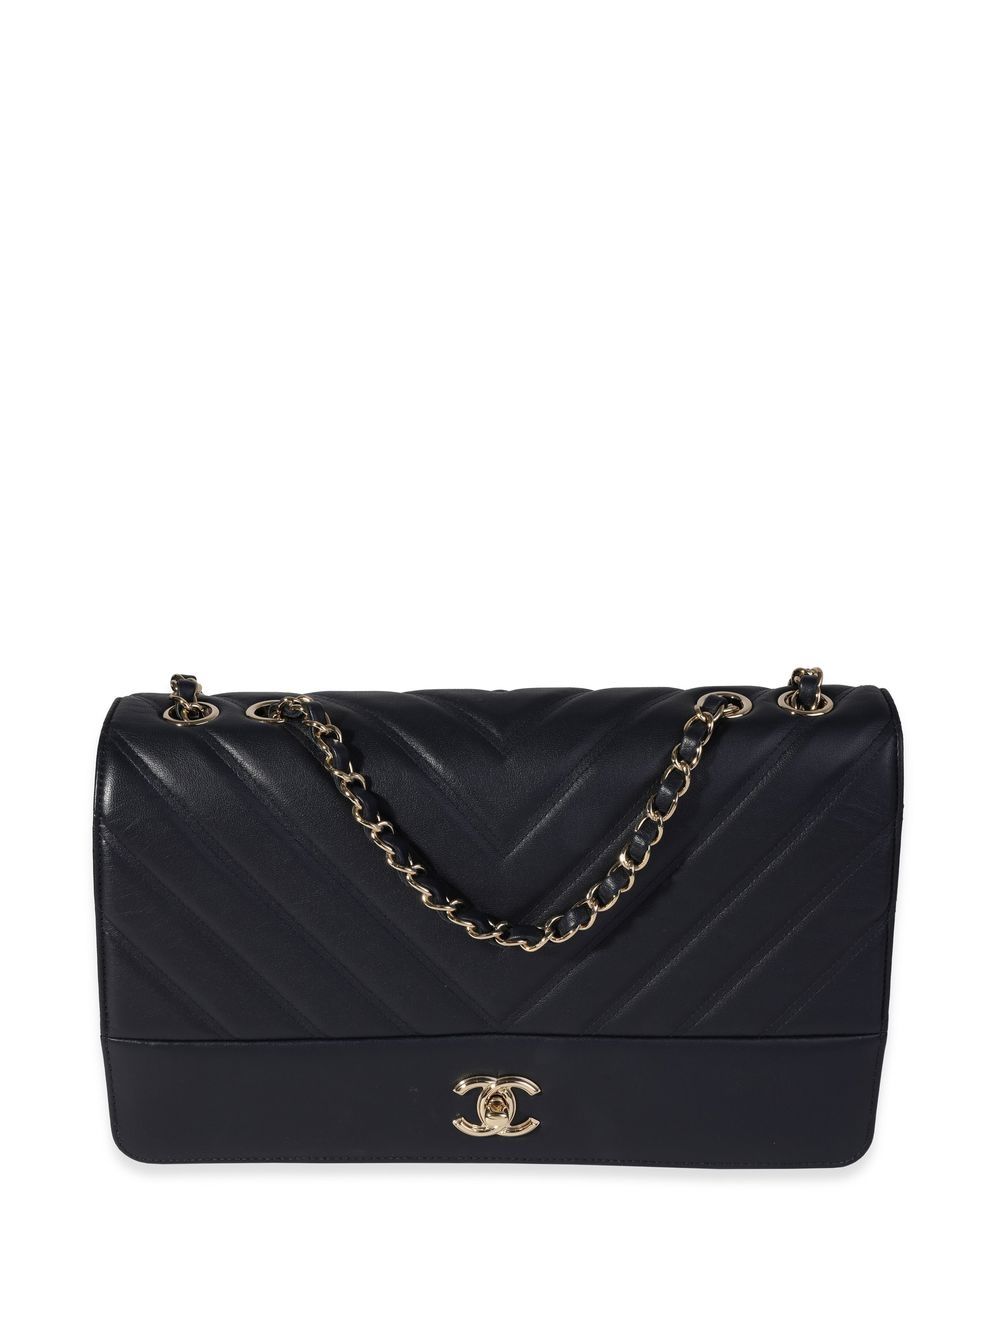 Chanel Pre-owned 1995 V-Stitch Mini Shoulder Bag - Black